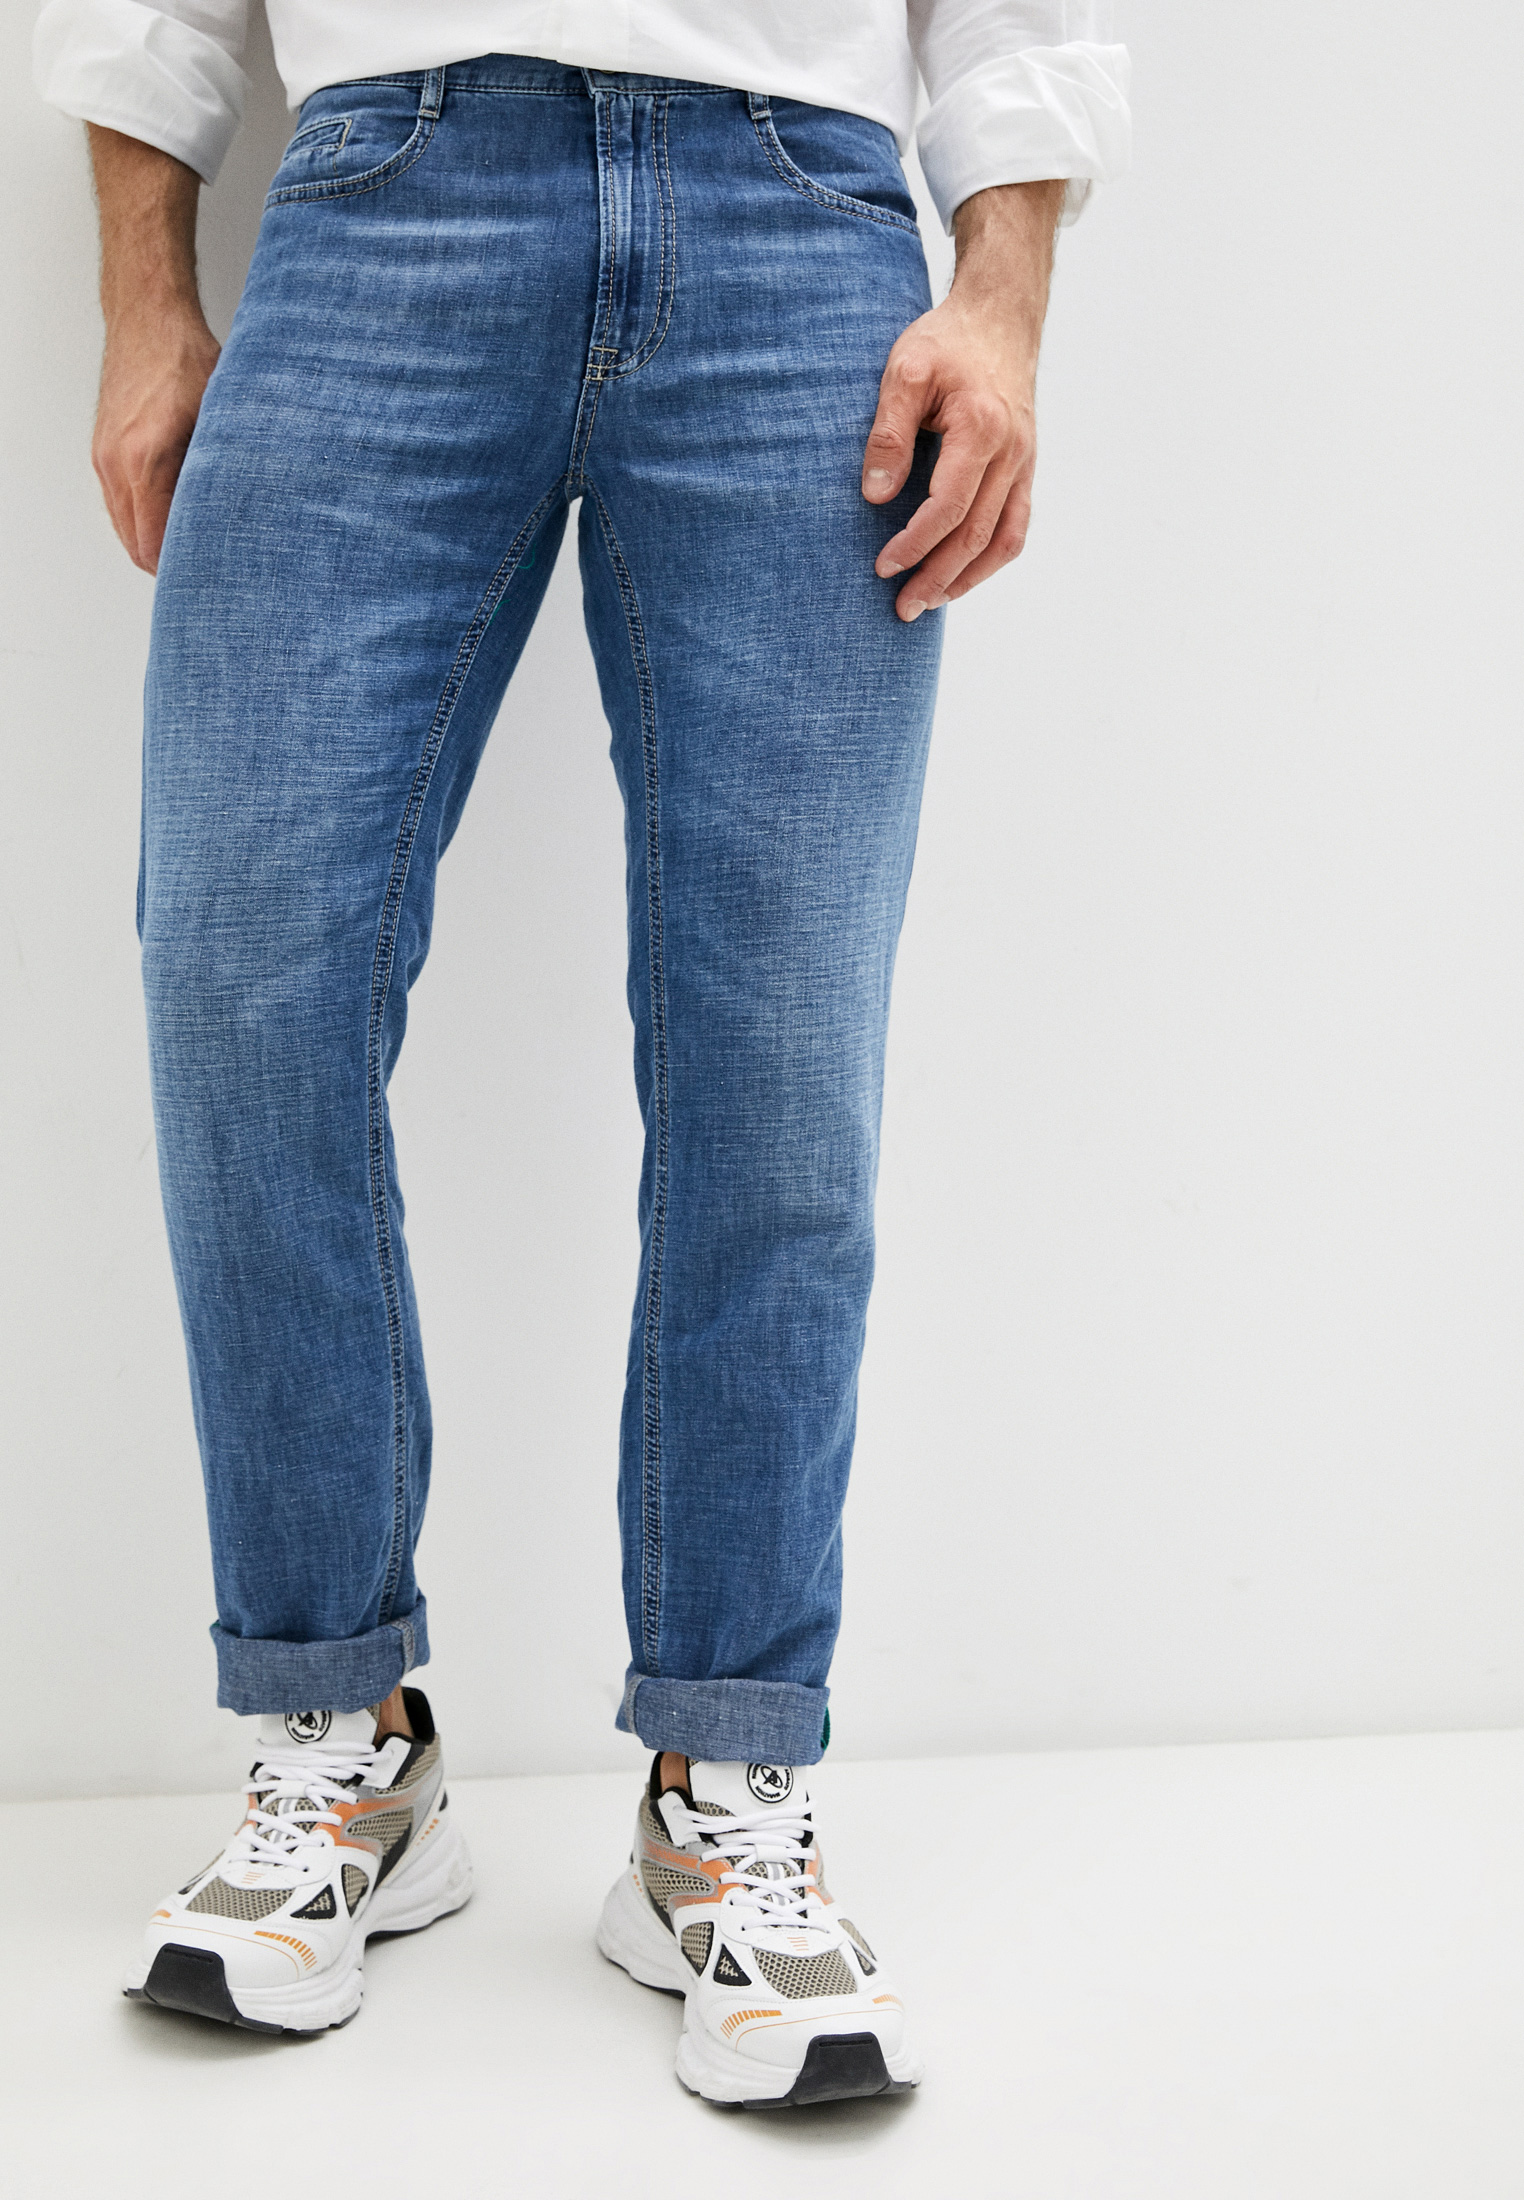 Мужские прямые джинсы Bikkembergs (Биккембергс) C Q 102 70 T 9765: изображение 1